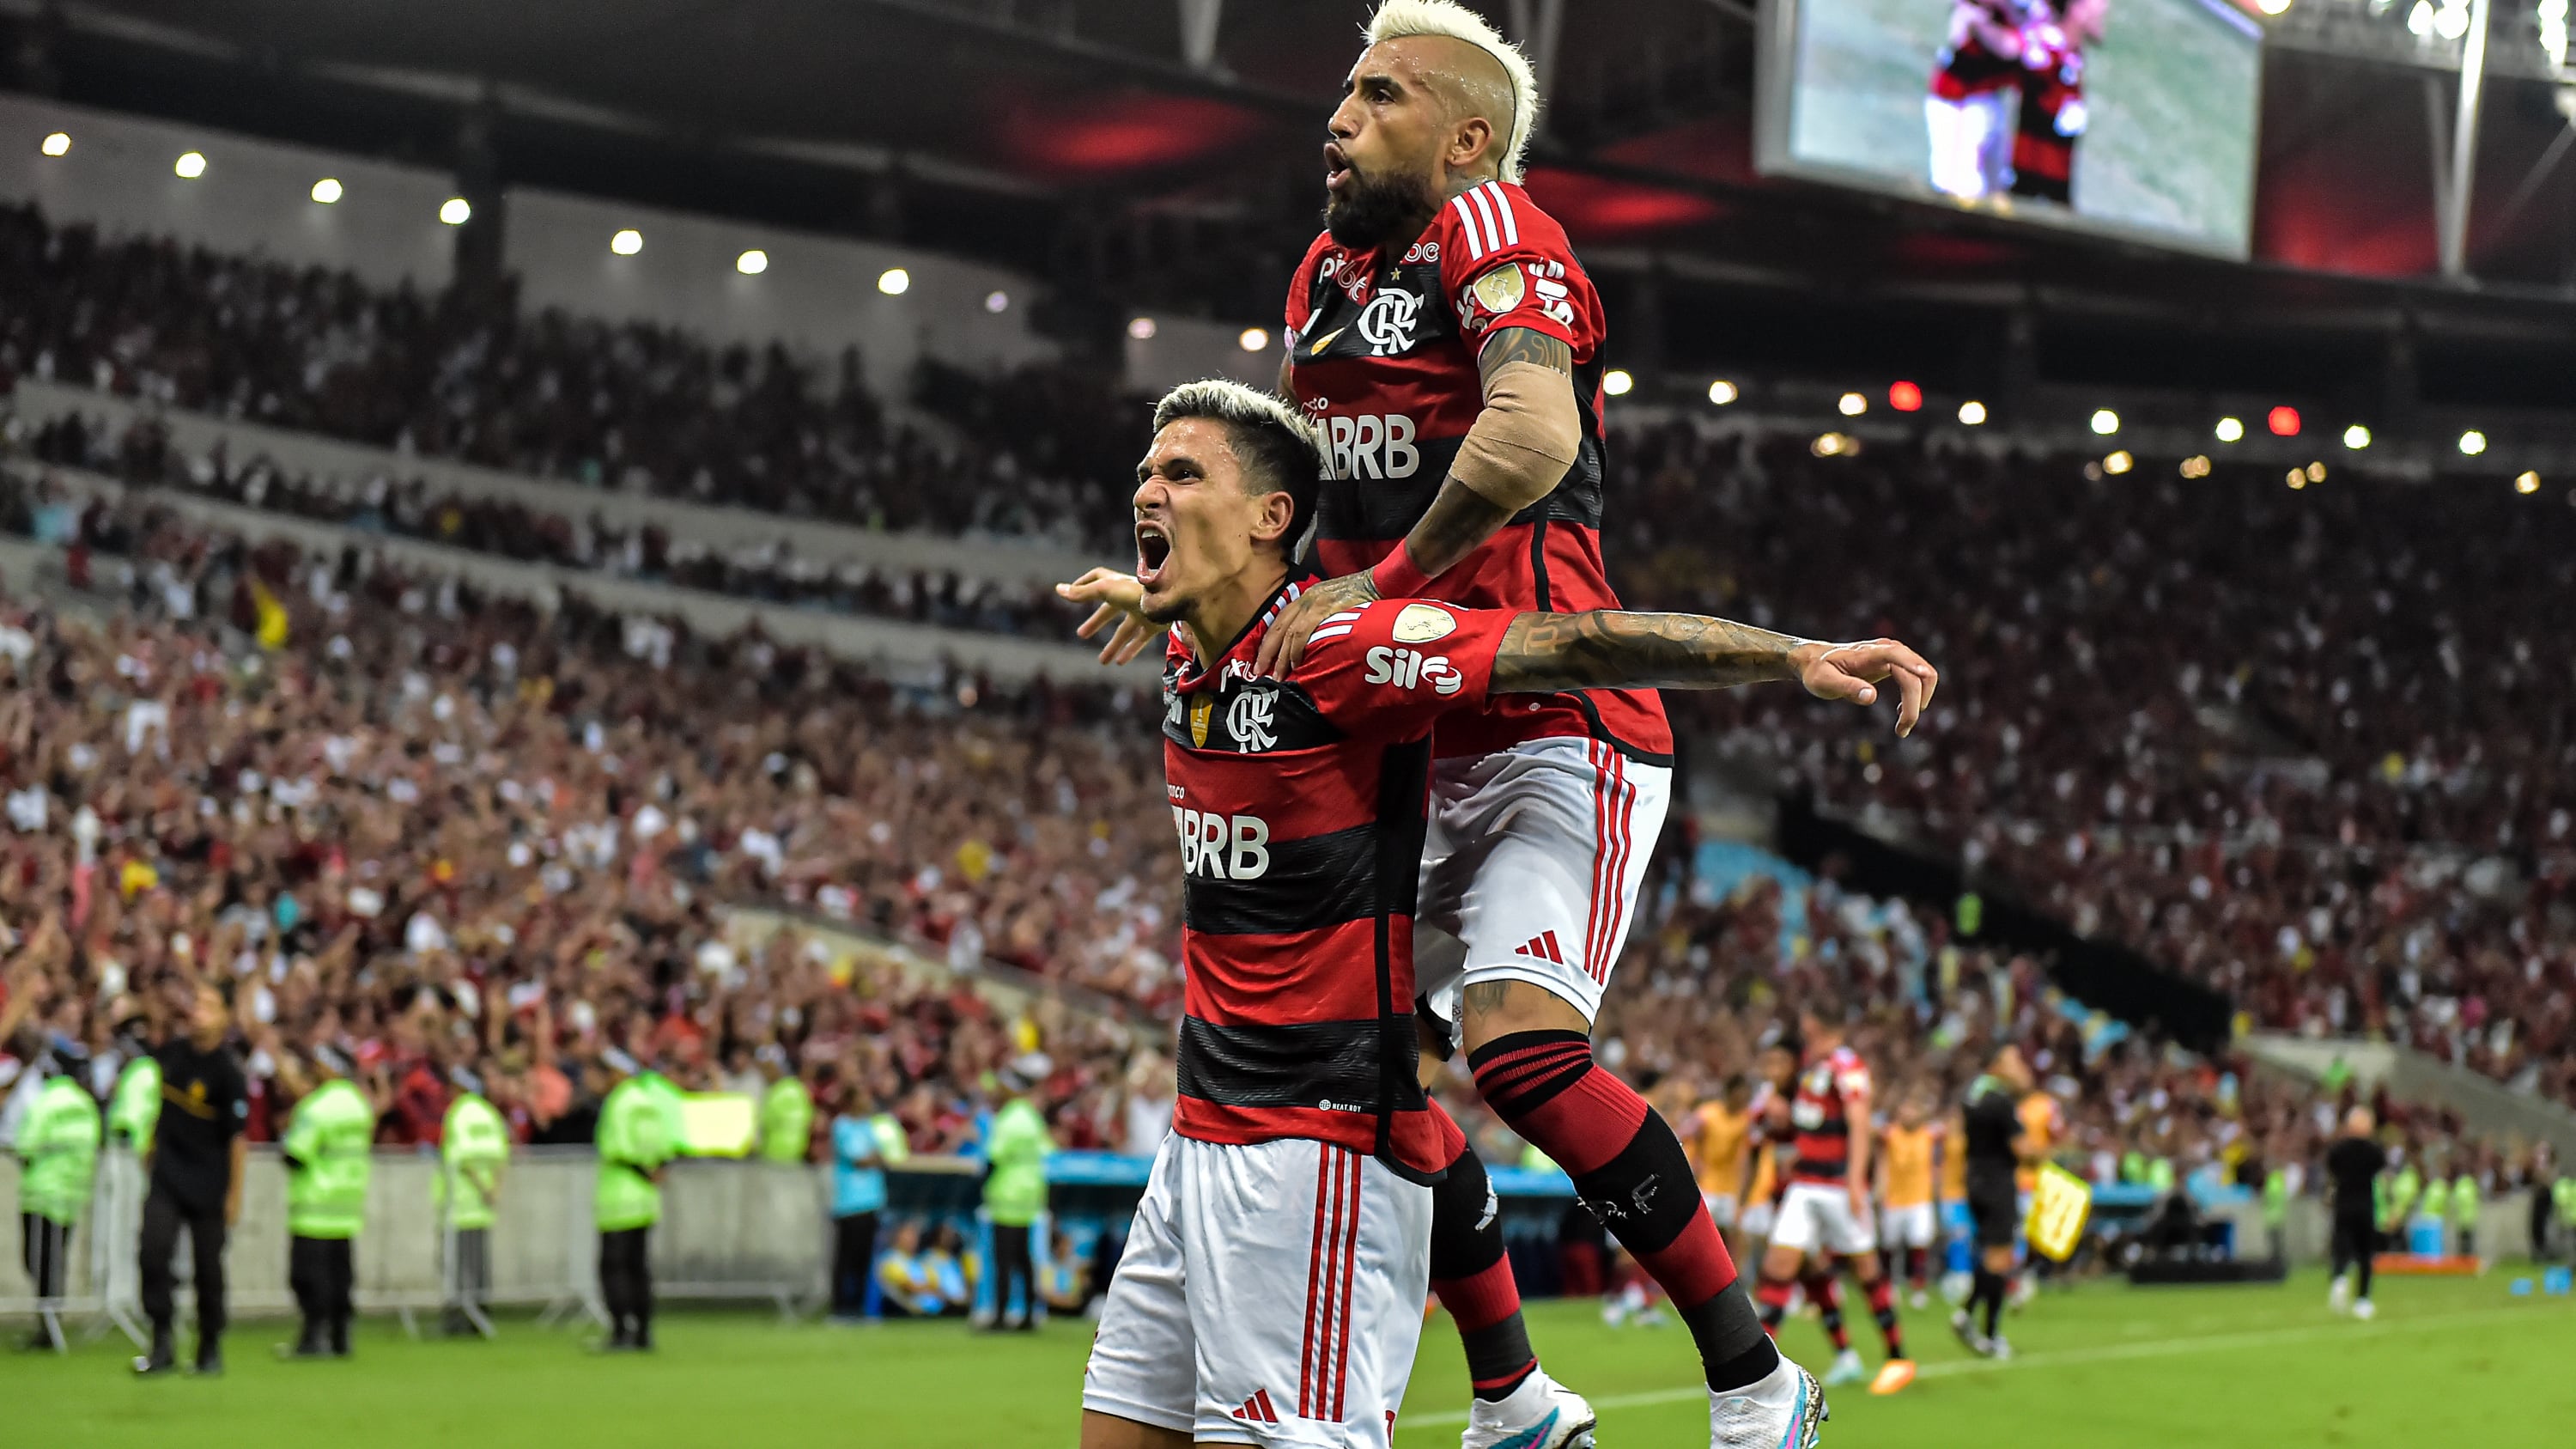 Arturo Vidal completó cinco partidos como reserva en Flamengo. / AGIF/Photosport